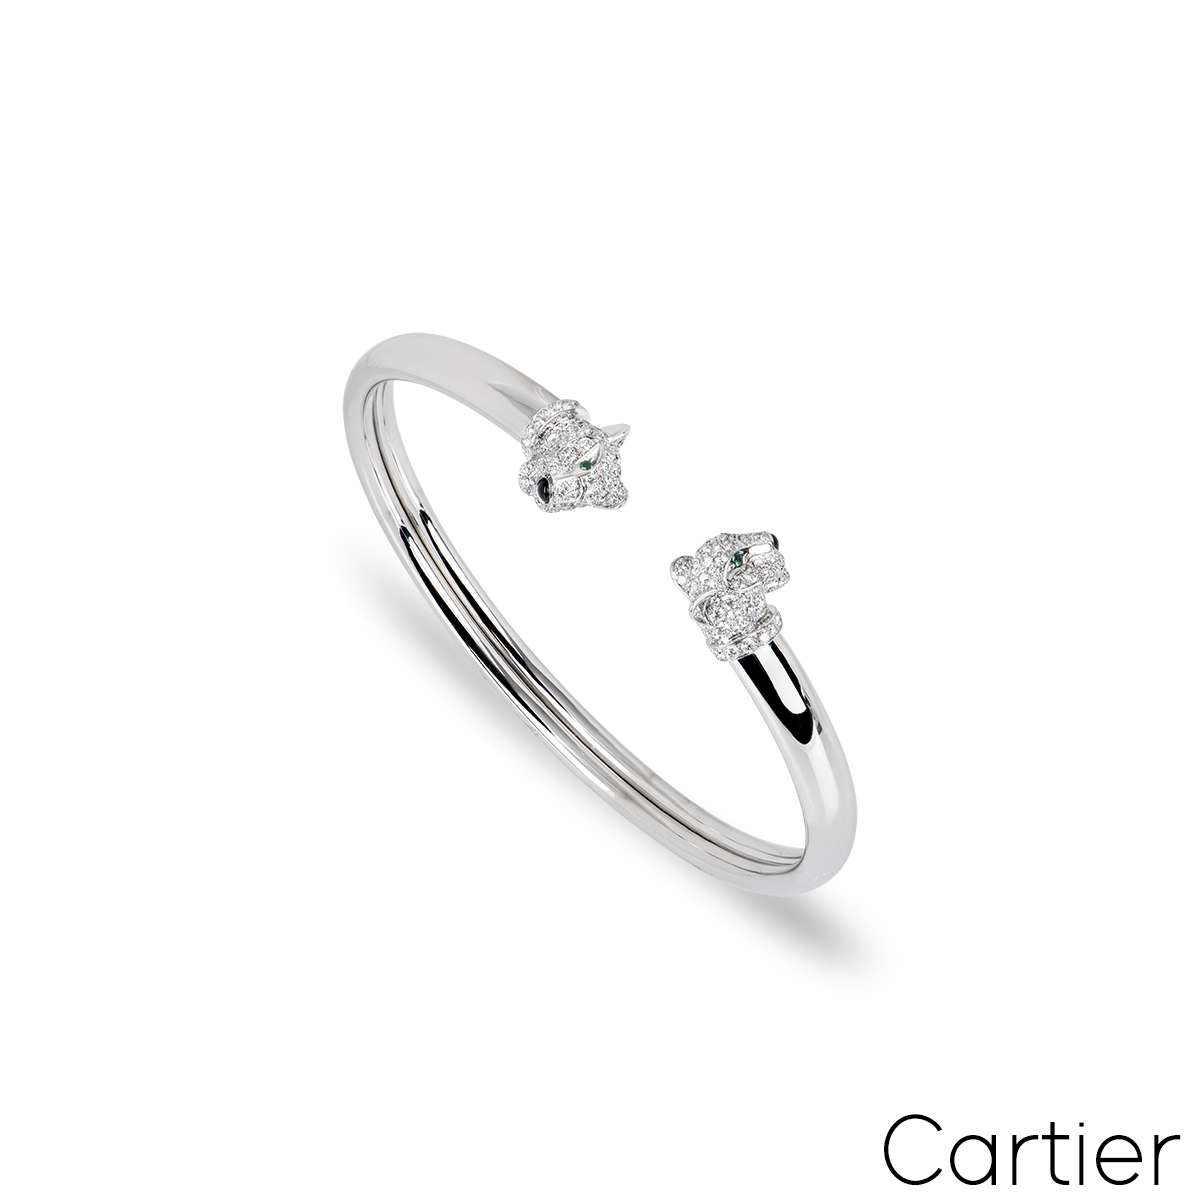 Cartier White Gold Panthère de Cartier Bracelet Size 19 N6706219